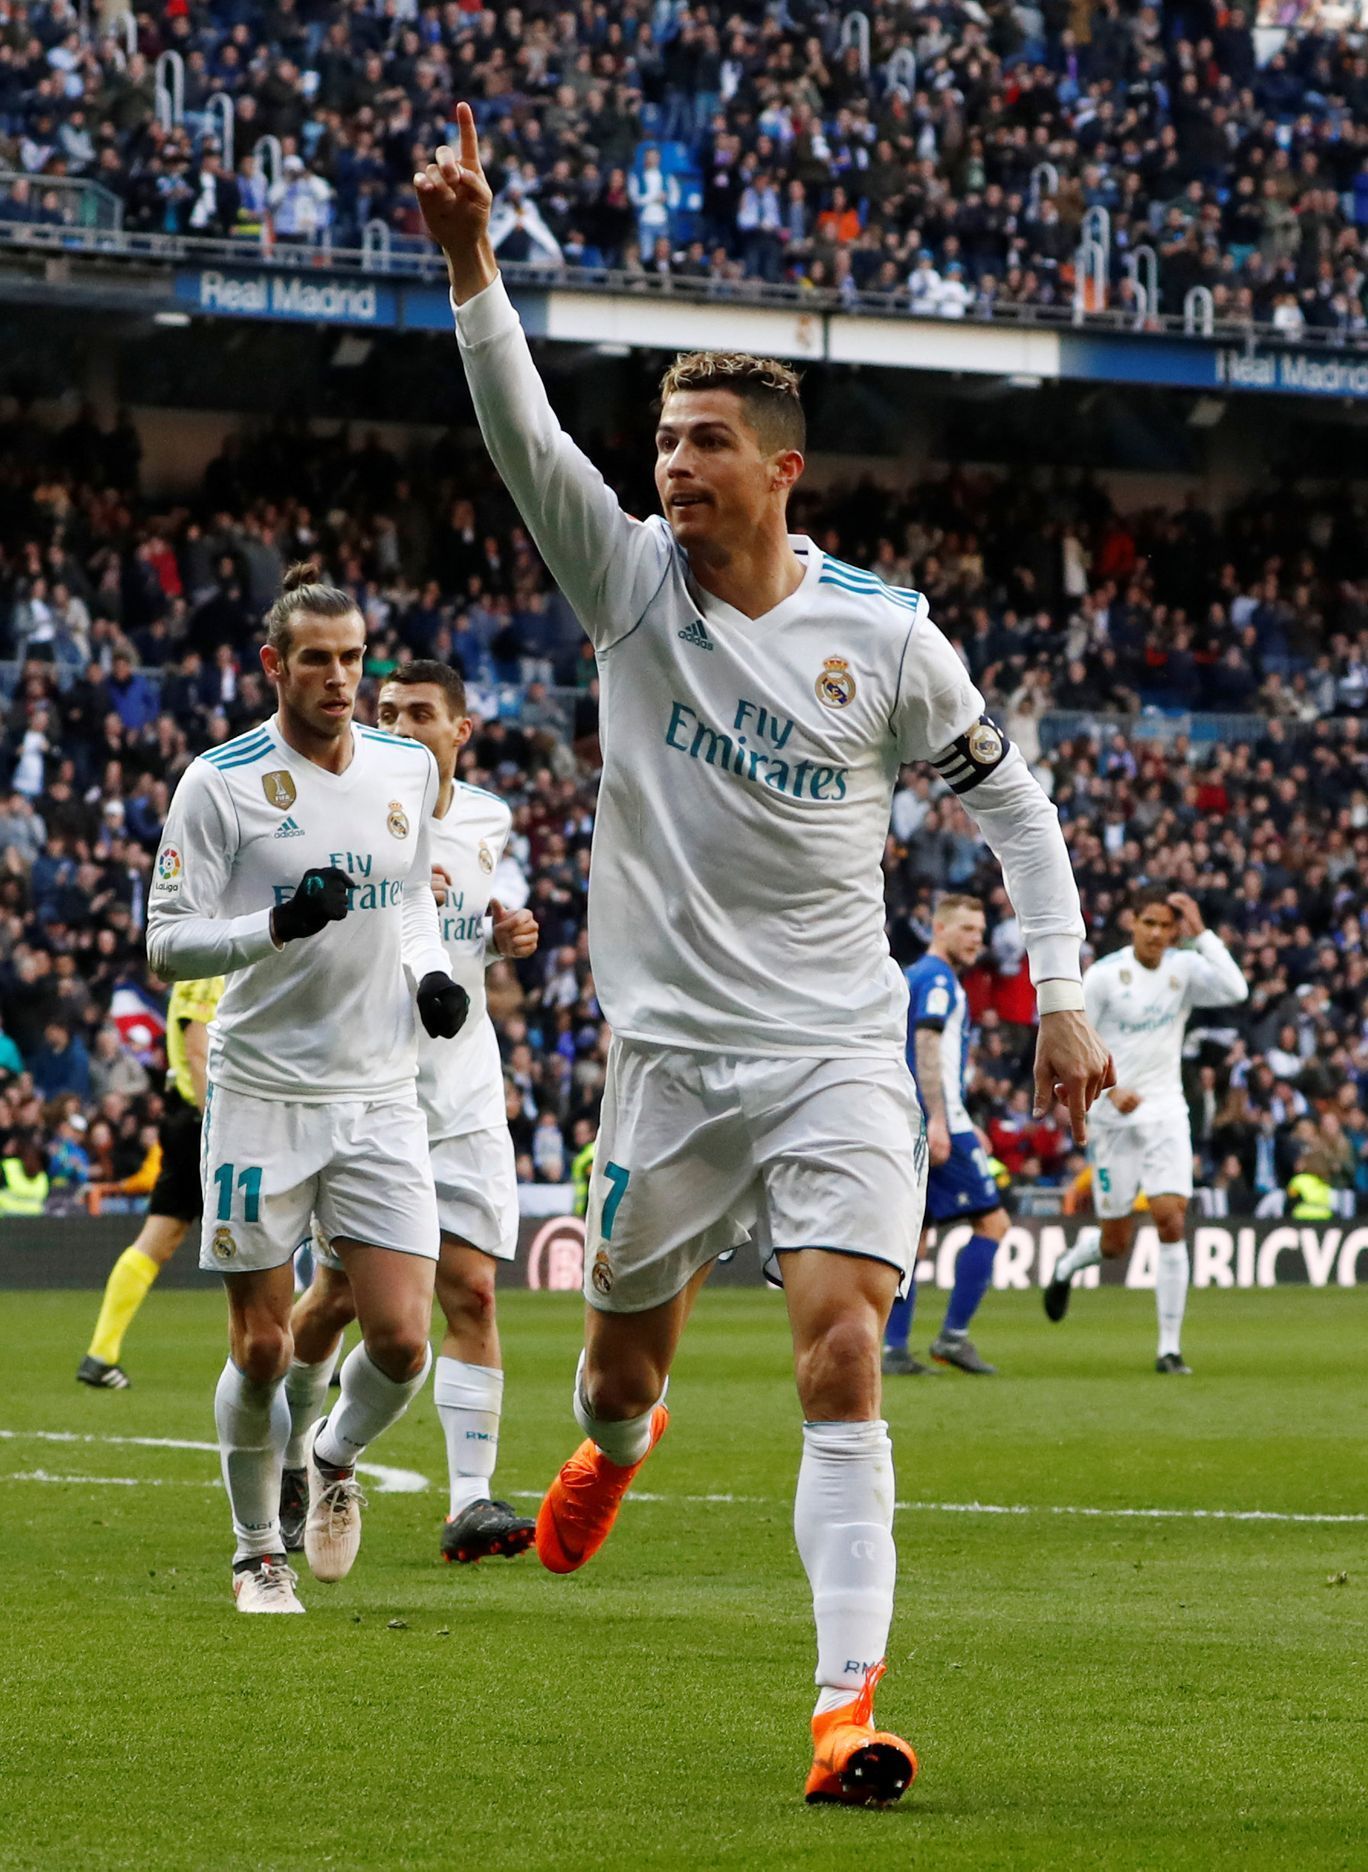 Cristiano Ronaldo slaví gól při výhře Realu Madrid 4:0 nad Alavésem